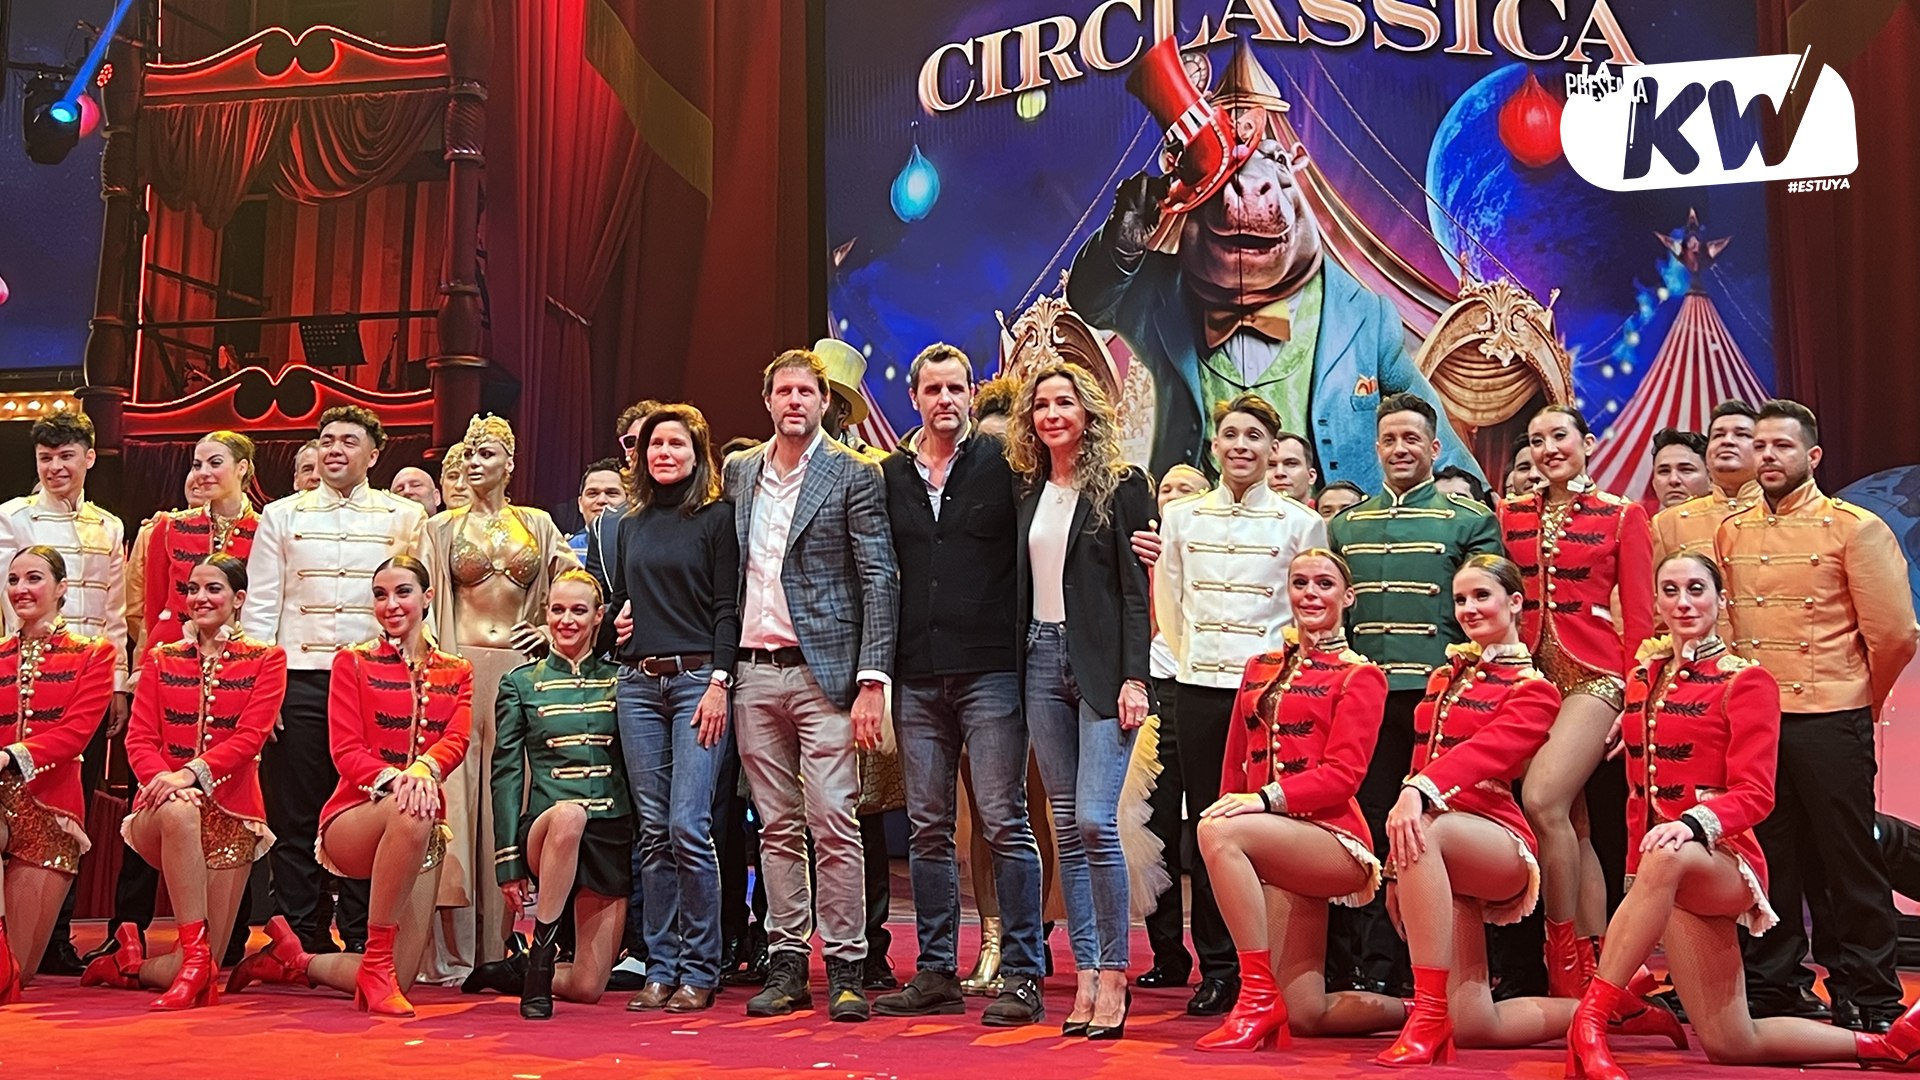 Circlassica, Gran Circo Mundial: una aventura circense que deleitará a toda la familia en Navidad